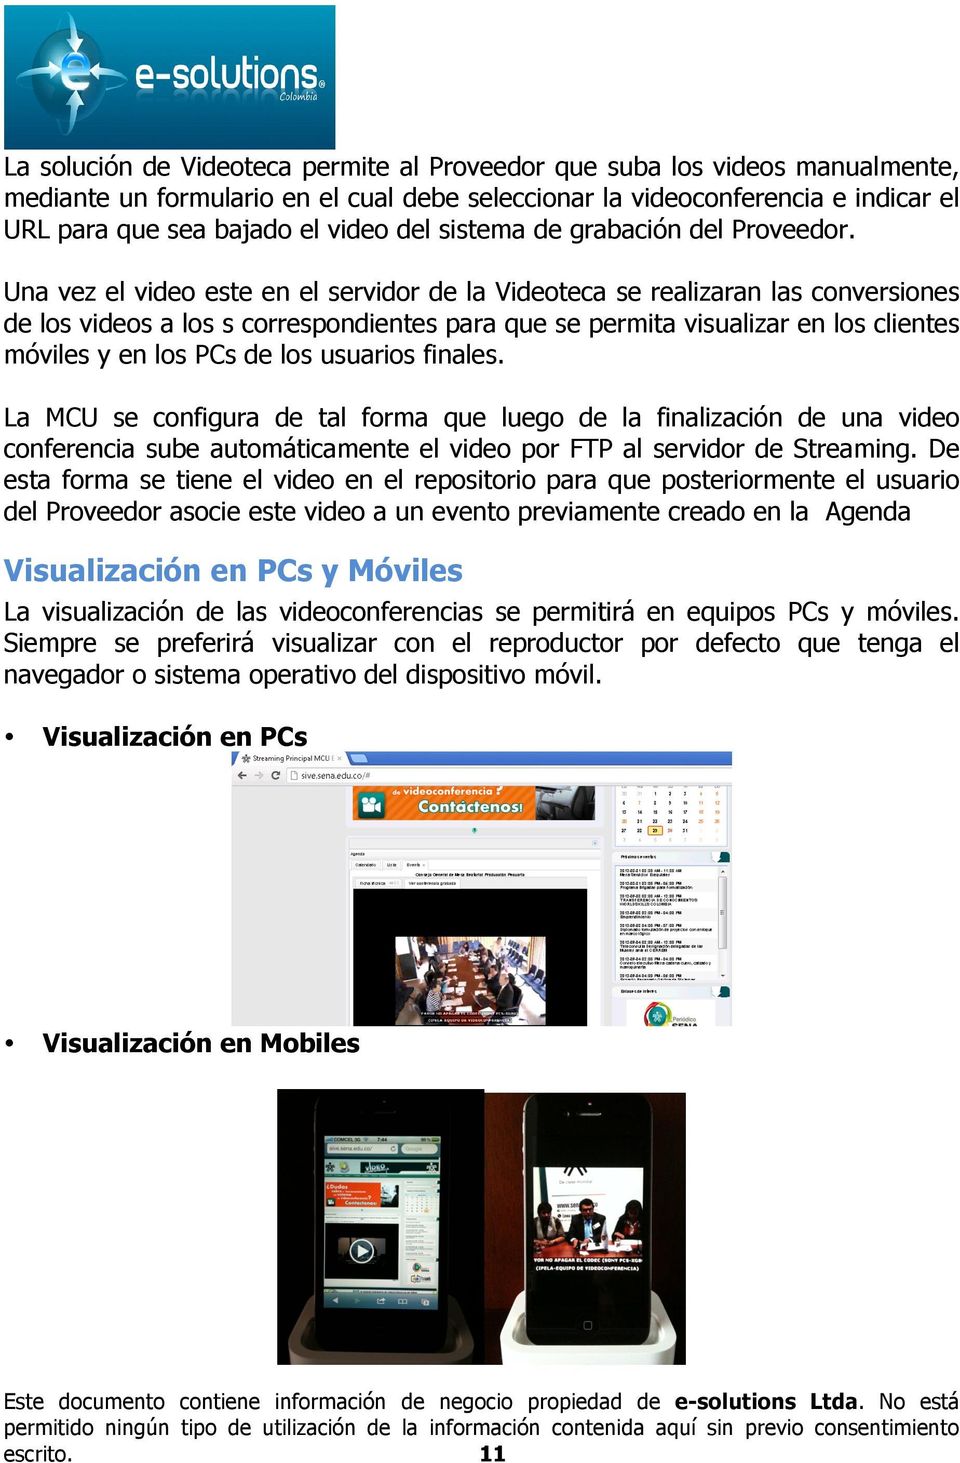 Una vez el video este en el servidor de la Videoteca se realizaran las conversiones de los videos a los s correspondientes para que se permita visualizar en los clientes móviles y en los PCs de los